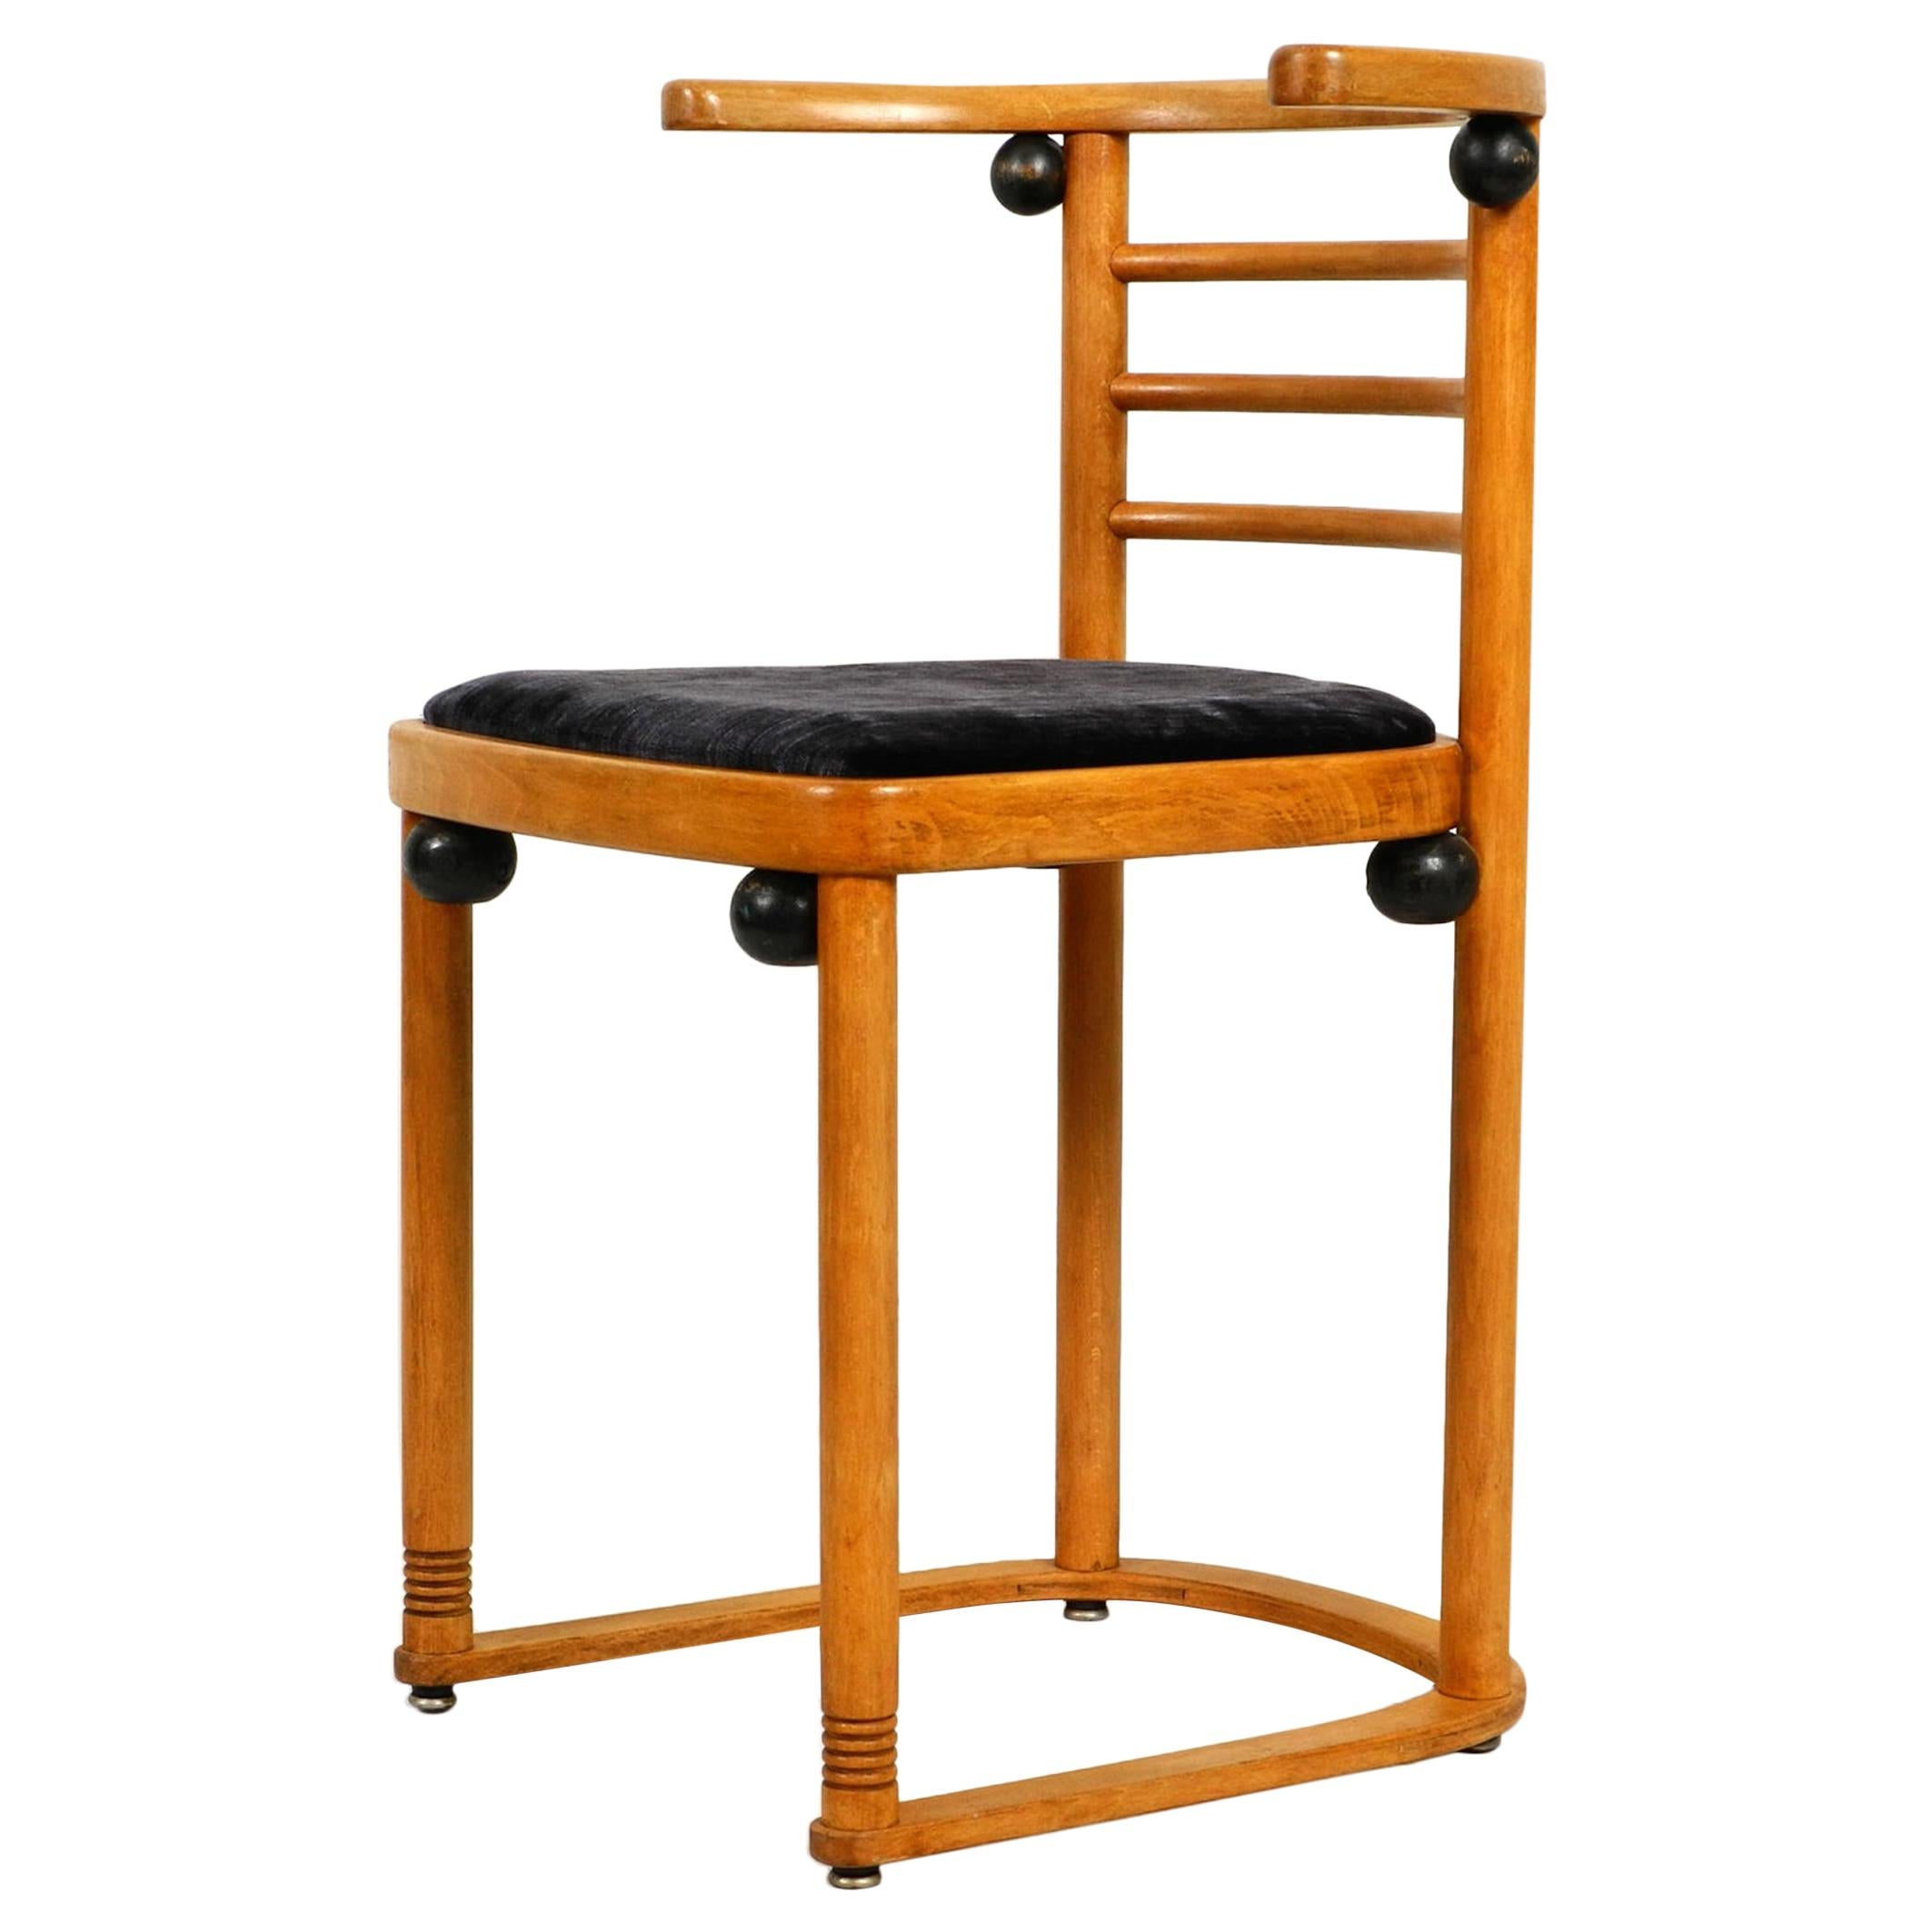 Original Josef Hoffmann "Bat" Chair Made of Solid Oakwood for Wittmann Austria